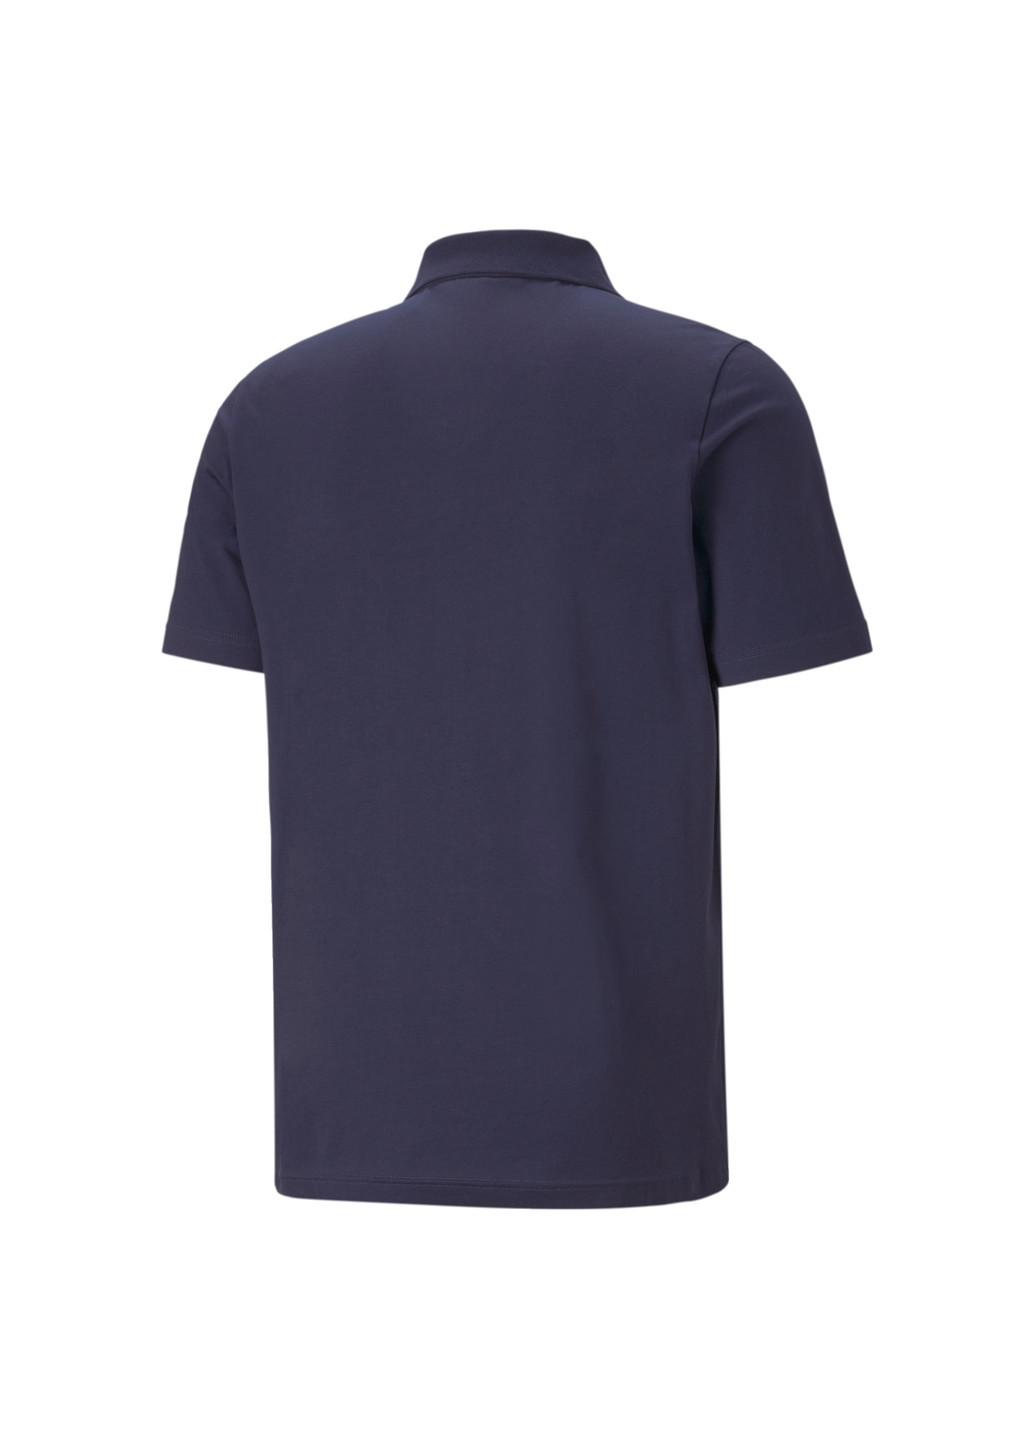 Синяя поло essentials men's polo shirt Puma